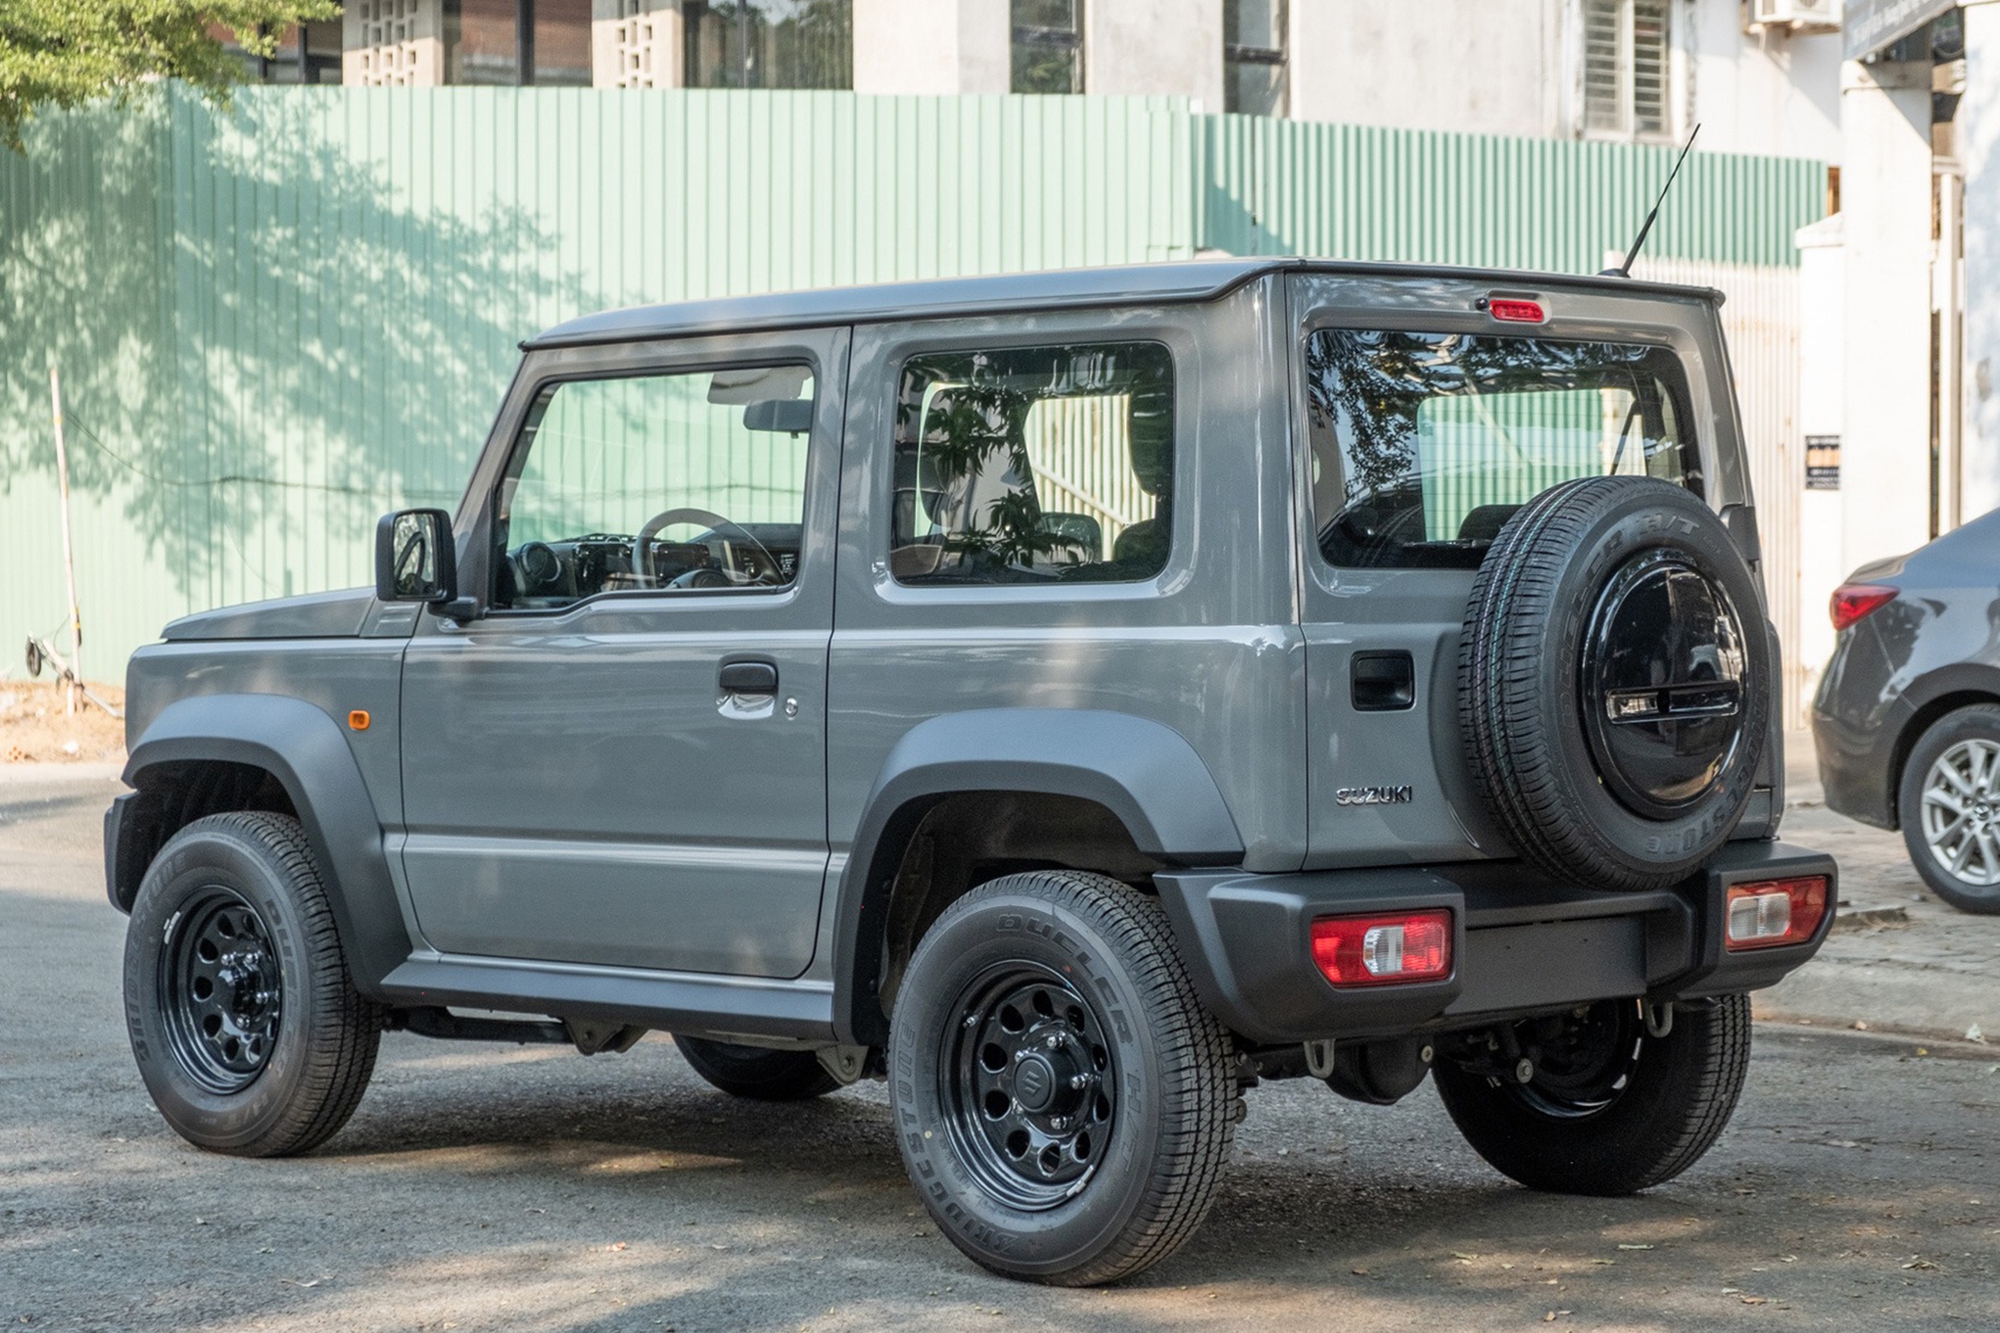 Đại lý ồ ạt nhận cọc Suzuki Jimny: Đã có 1 xe mẫu về Việt Nam, giá dự kiến 789 triệu đồng - Ảnh 2.